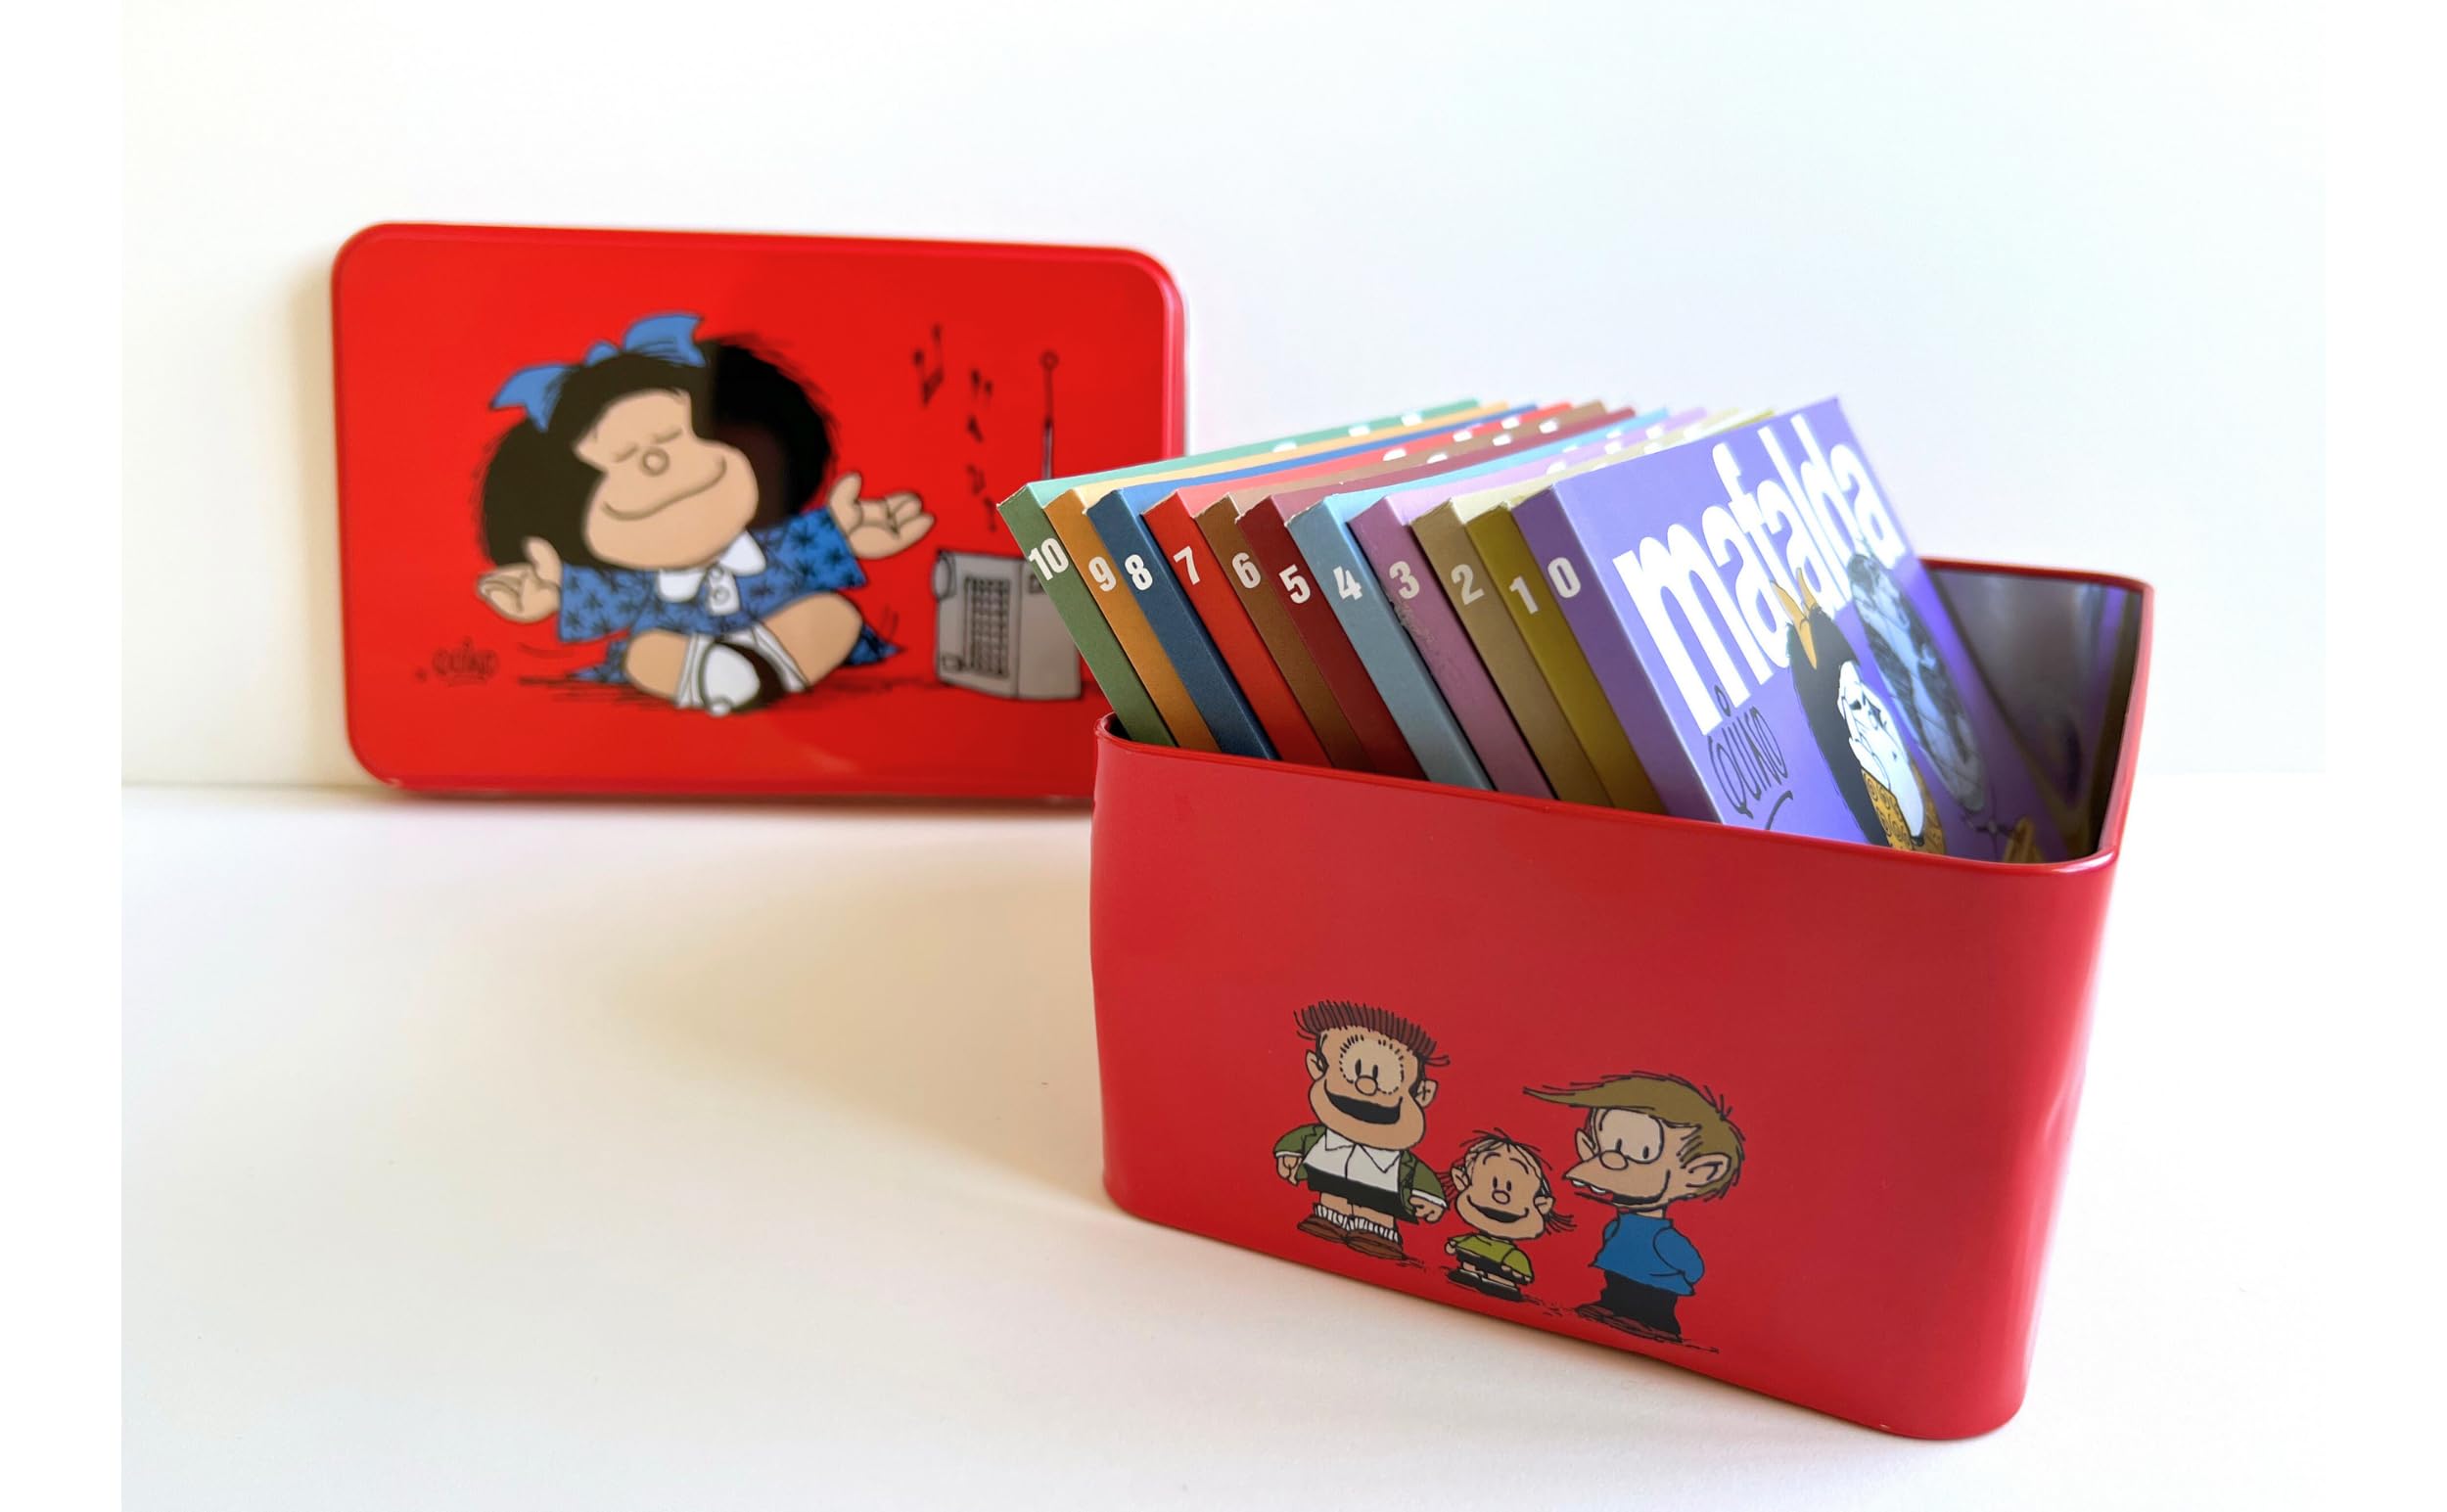 11 tomos de MAFALDA en una lata roja (Edición limitada) / 11 Mafalda's titles in a red can (Limited Edition) (Spanish Edition)